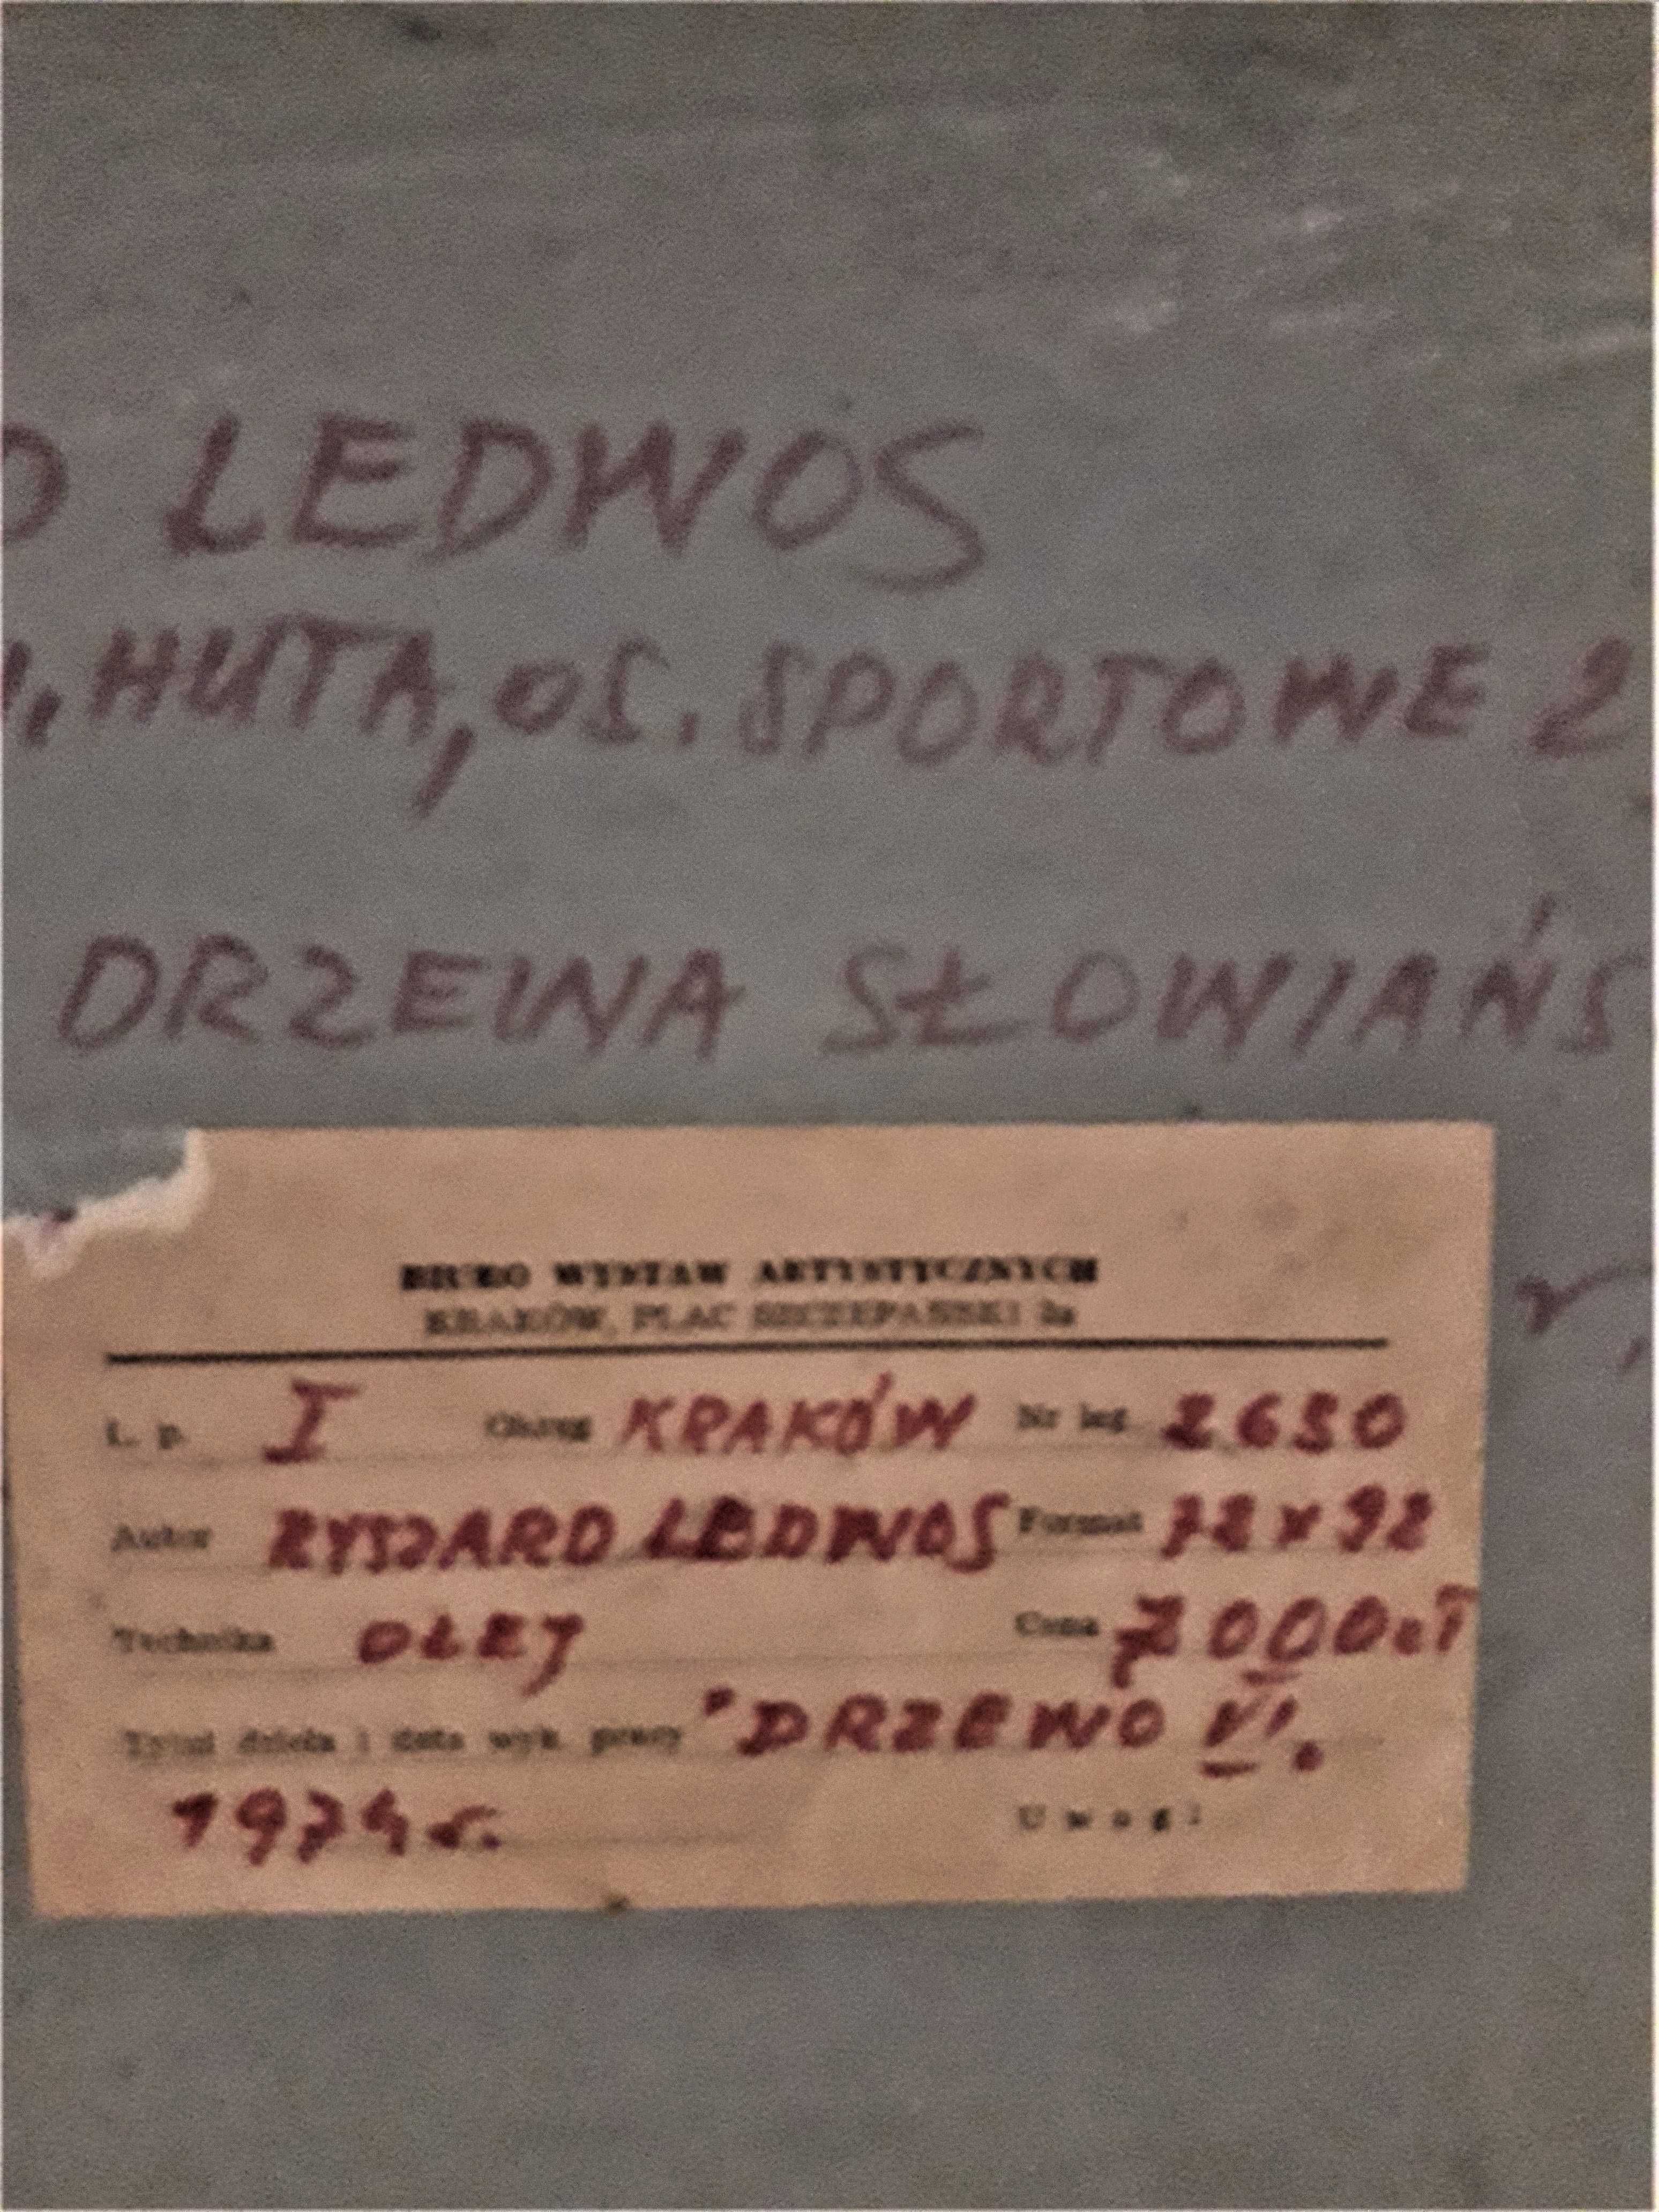 Ryszard Ledwos -Drzewo słowiańskie 1974-Ciekawa Technika 3D